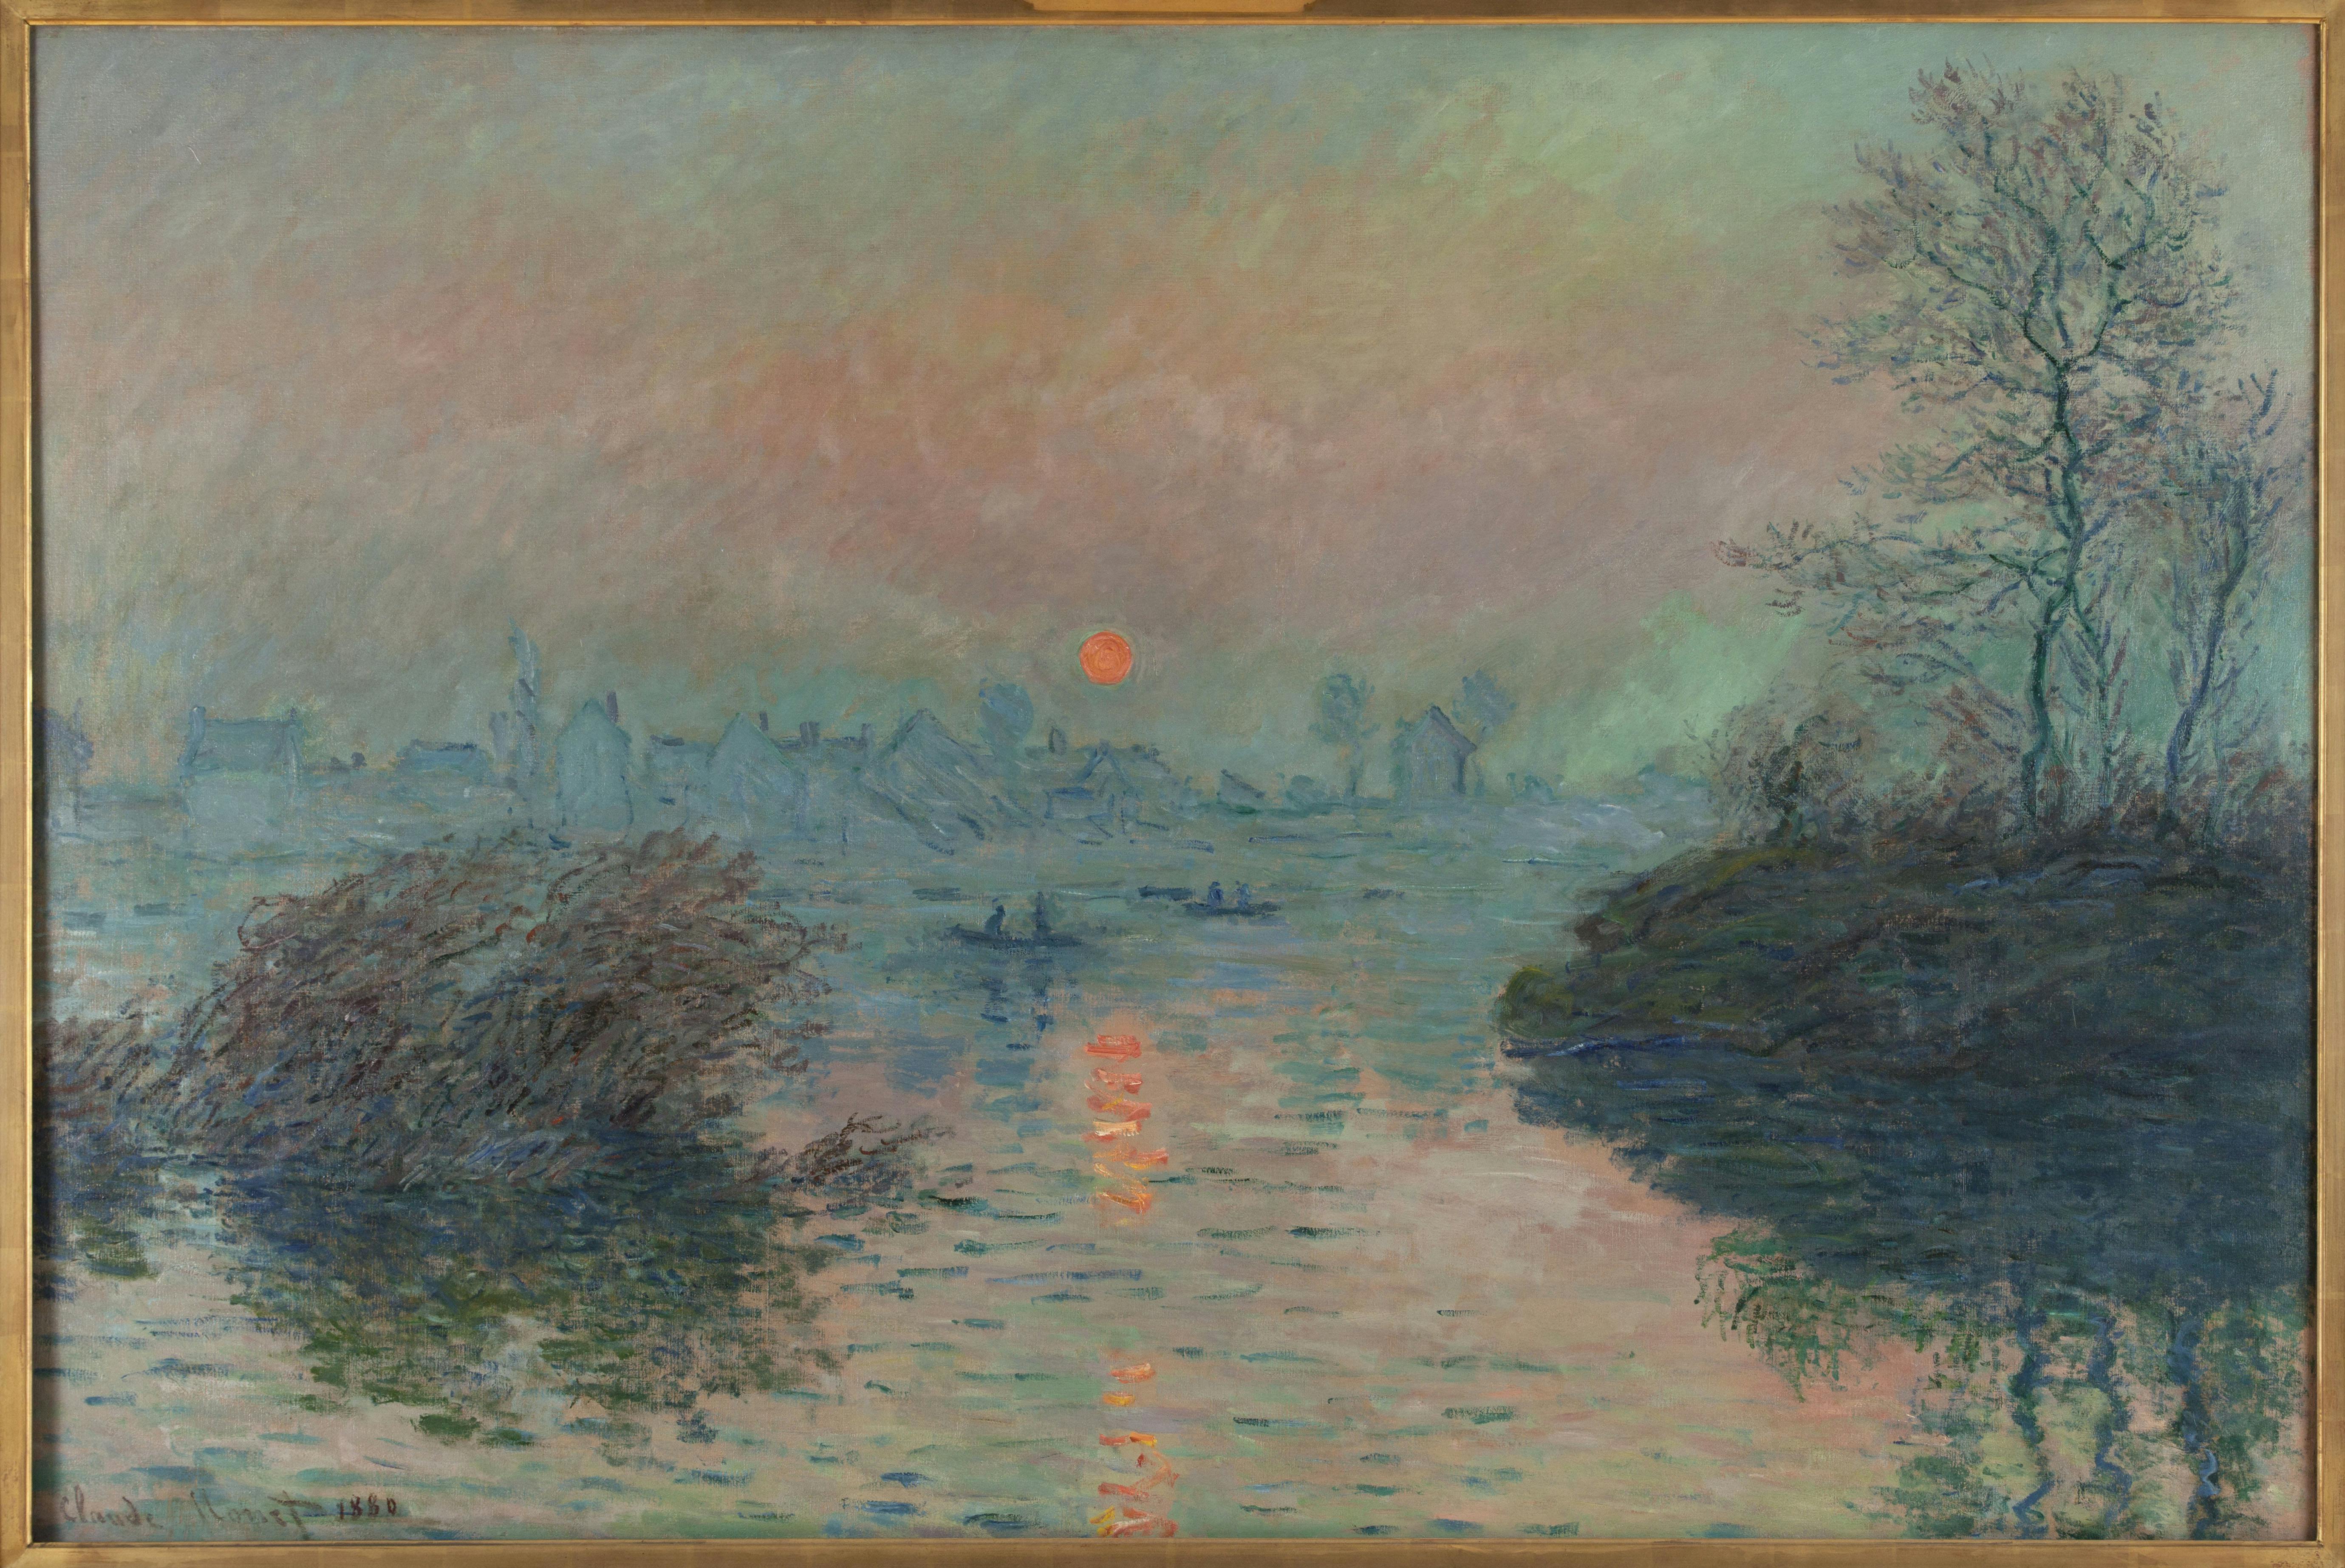 Soleil couchant sur la Seine à Lavacourt by Claude Monet, at Petit Palais, Paris.